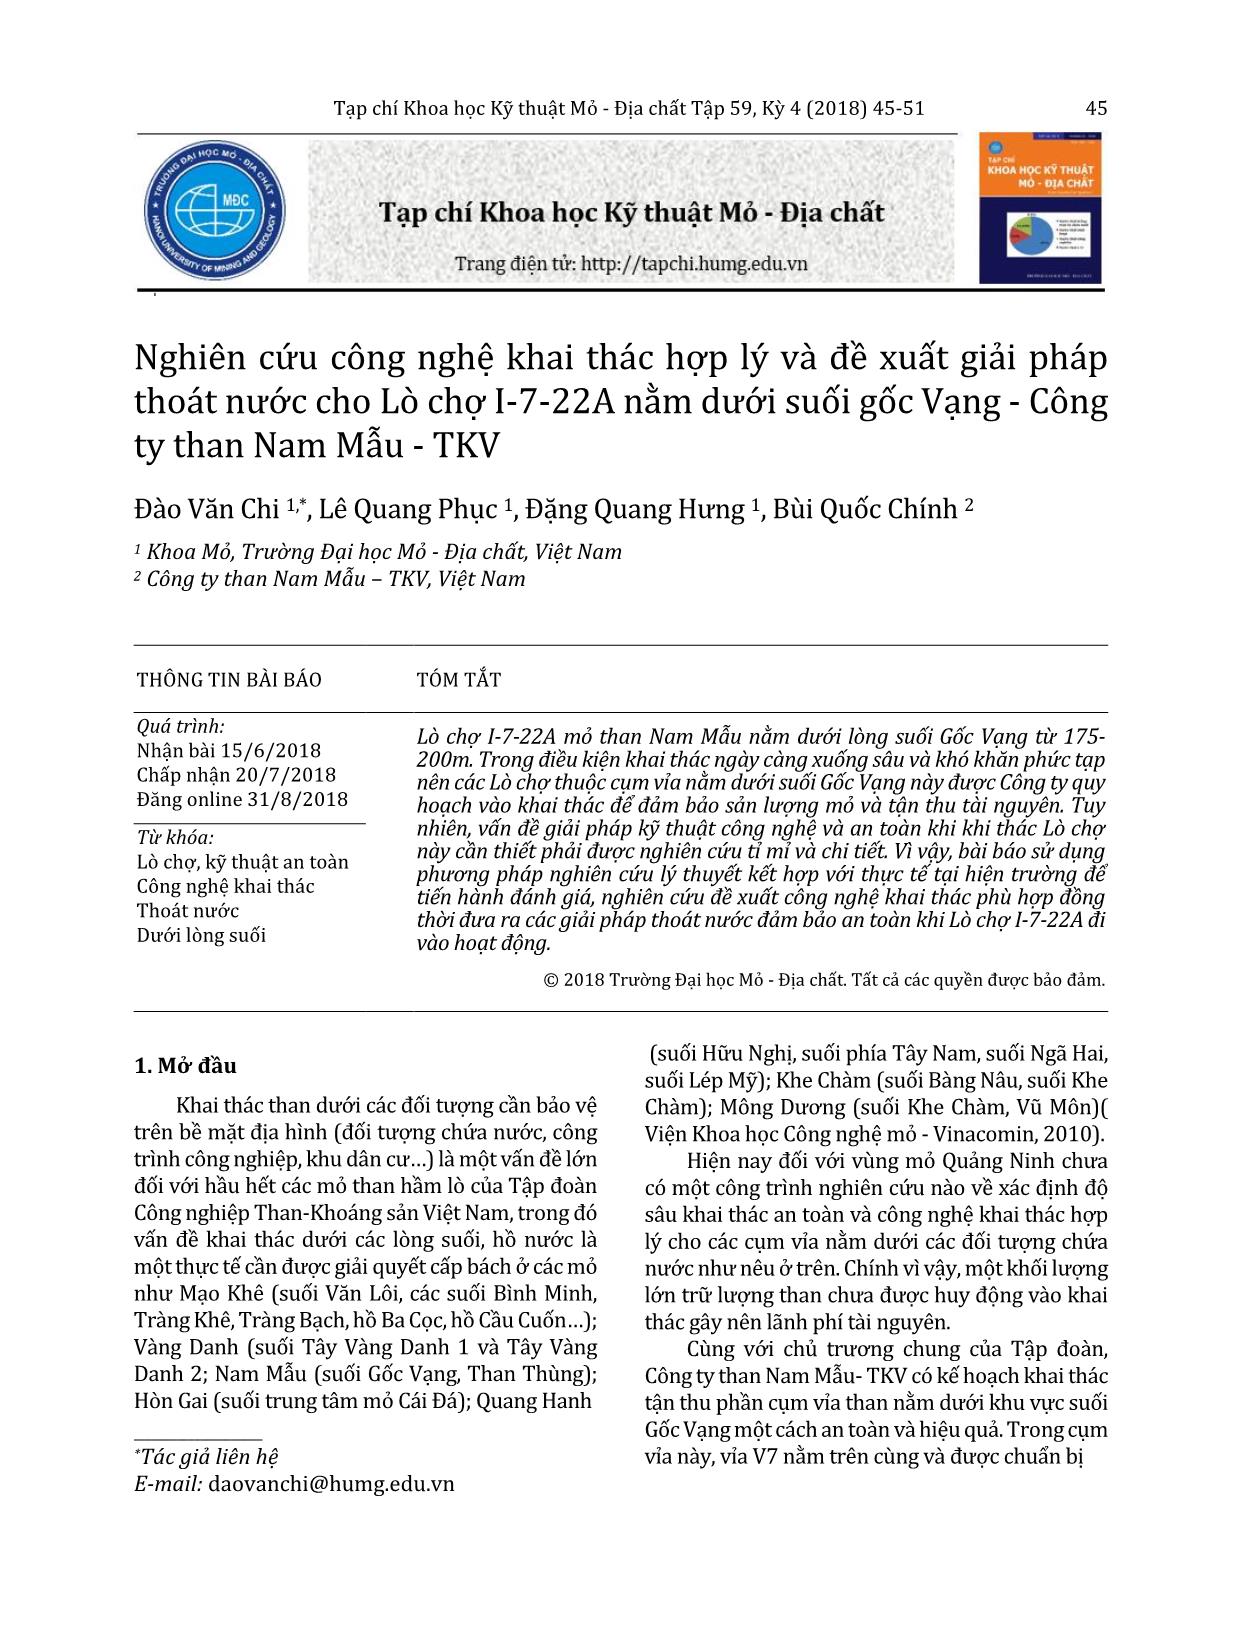 Nghiên cứu công nghệ khai thác hợp lý và đề xuất giải pháp thoát nước cho Lò chợ I-7-22A nằm dưới suối gốc Vạng - Công ty than Nam Mẫu - TKV trang 1